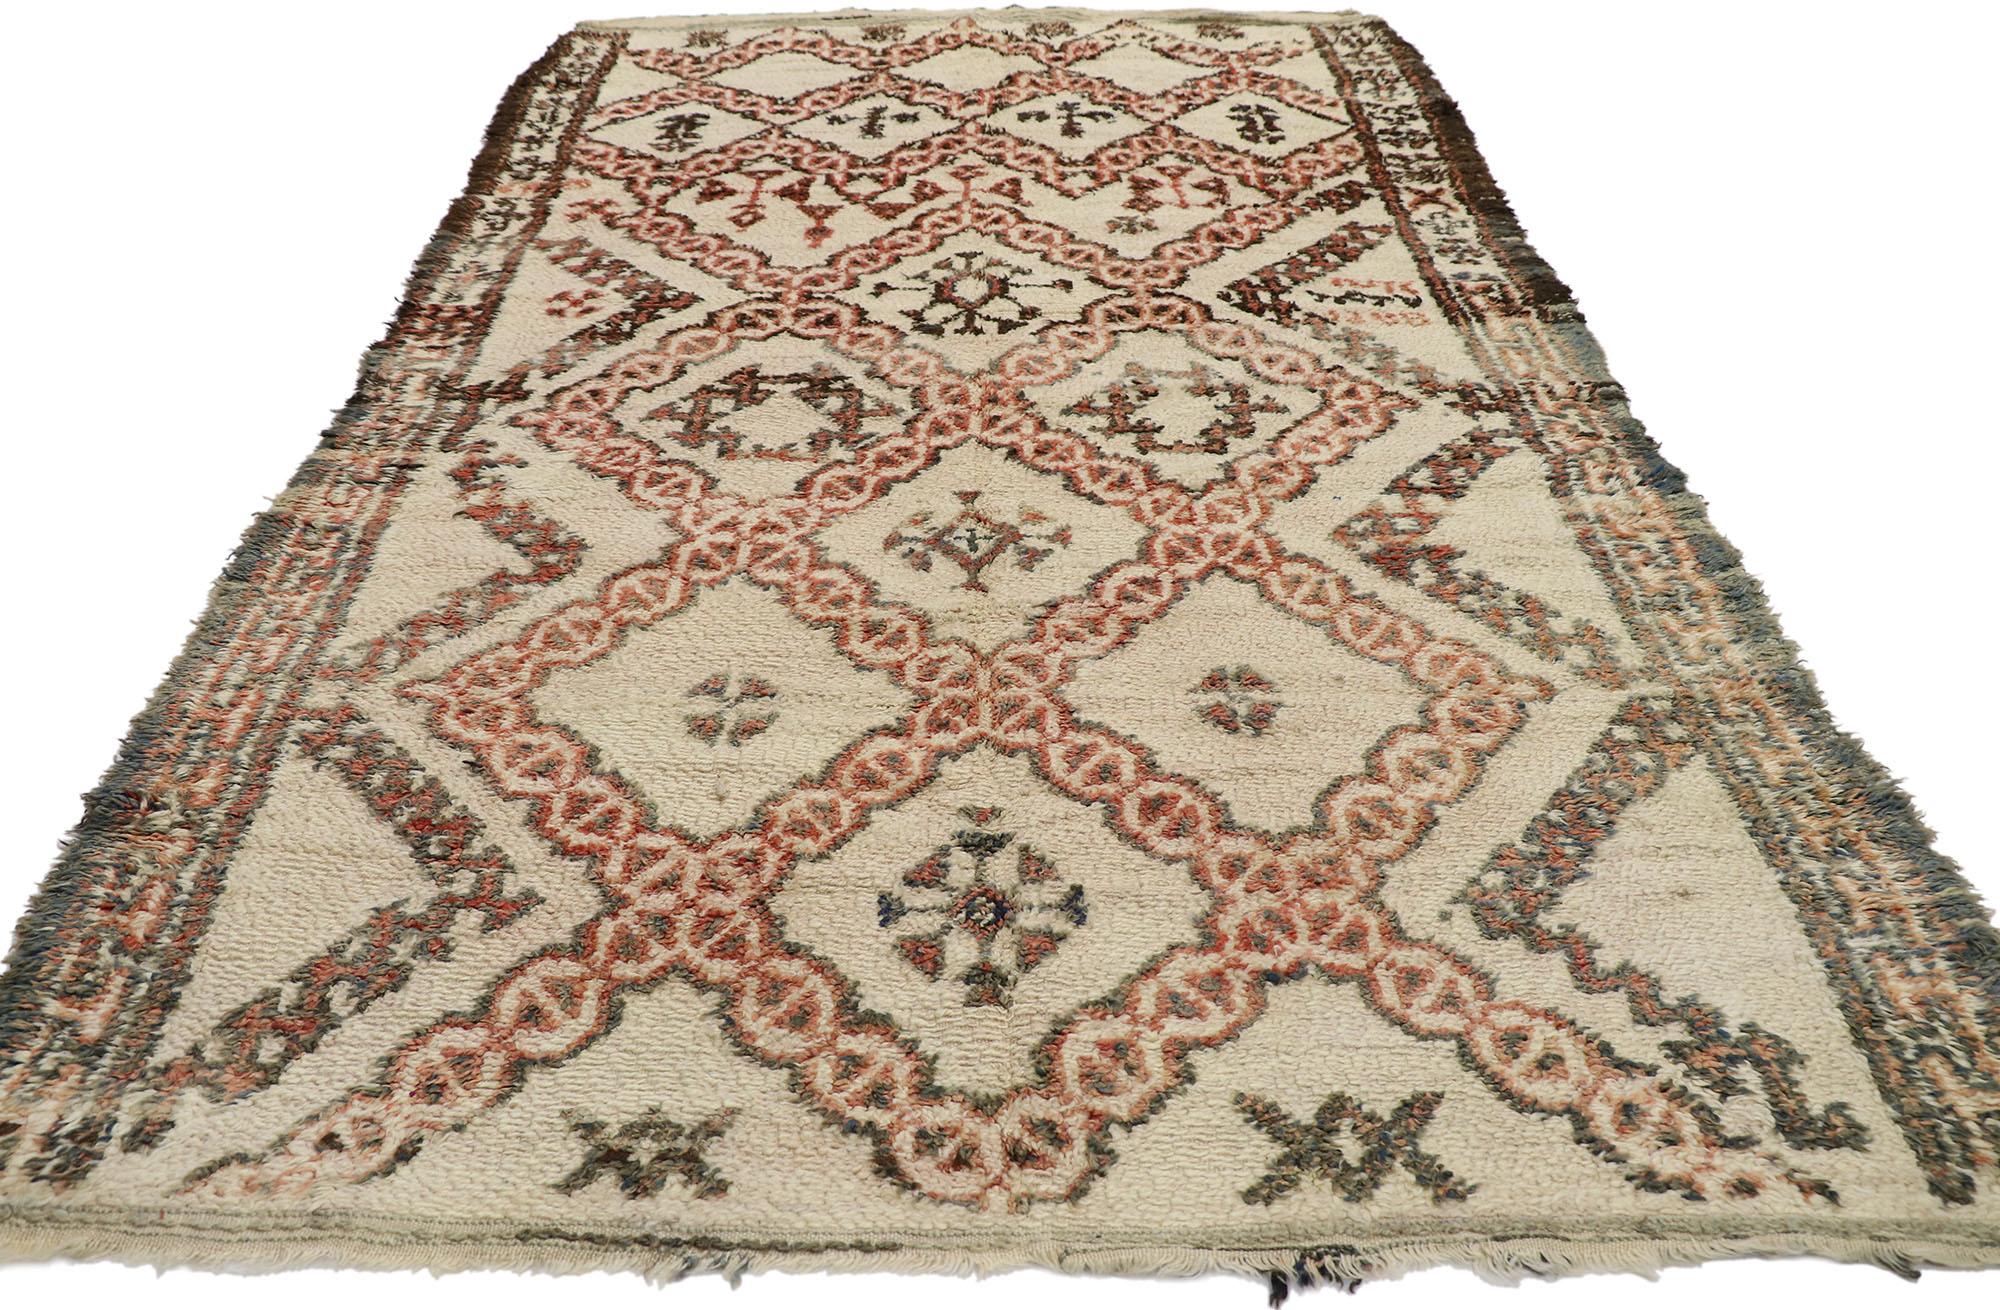 21382 Vintage Berber Marokkanischer Beni Ourain Teppich, 05'07 x 09'03. Die vom angesehenen Beni Ourain-Stamm in Marokko stammenden, sorgfältig gefertigten Teppiche ehren die Tradition mit viel Liebe zum Detail und verwenden unbehandelte Schafwolle,